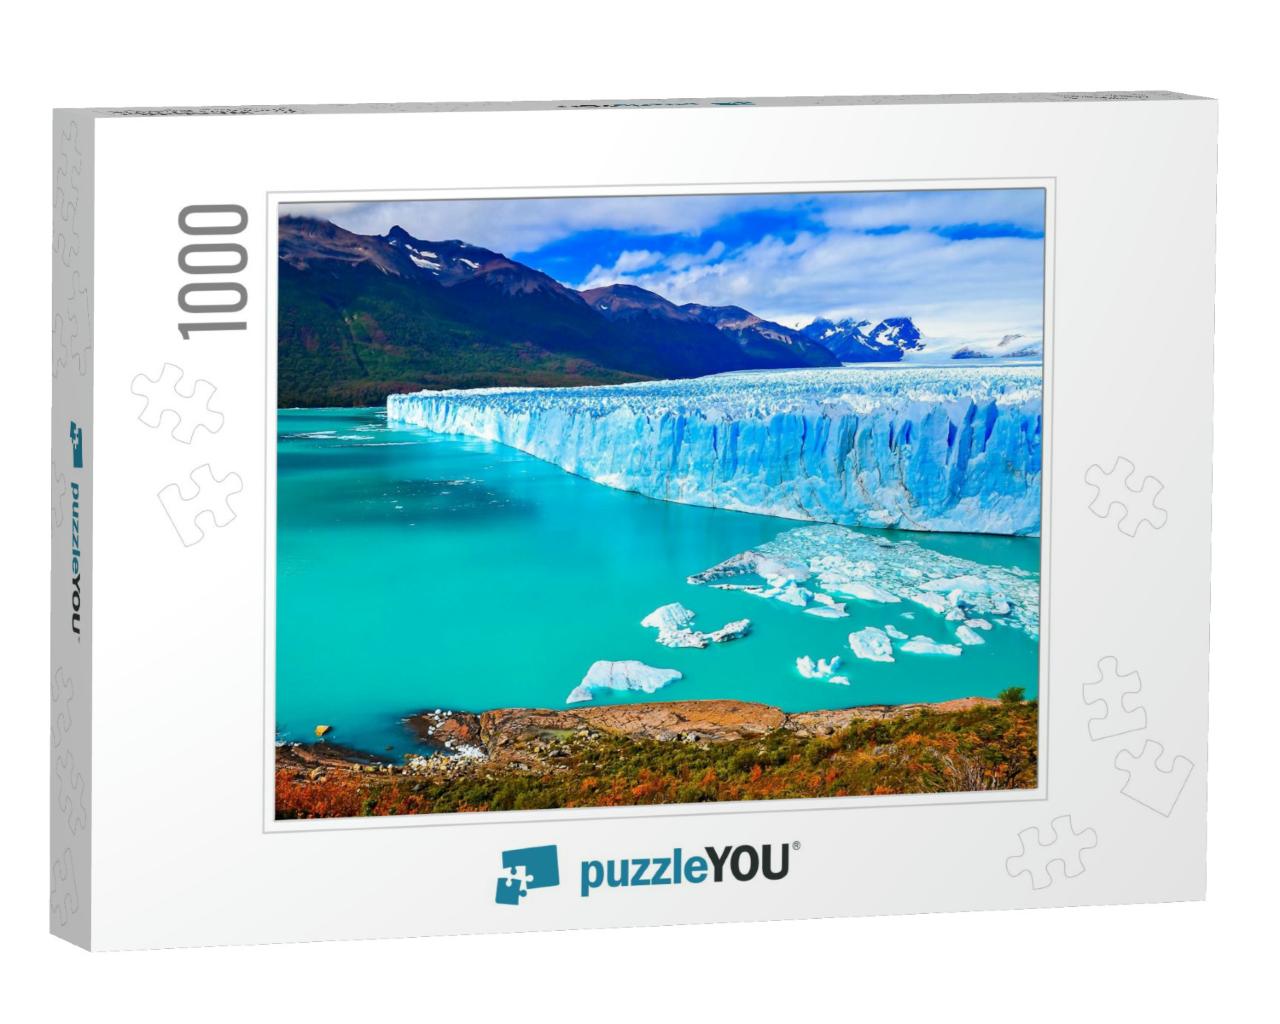 Perito Moreno Glacier in Patagonia, Argentina... Jigsaw Puzzle with 1000 pieces